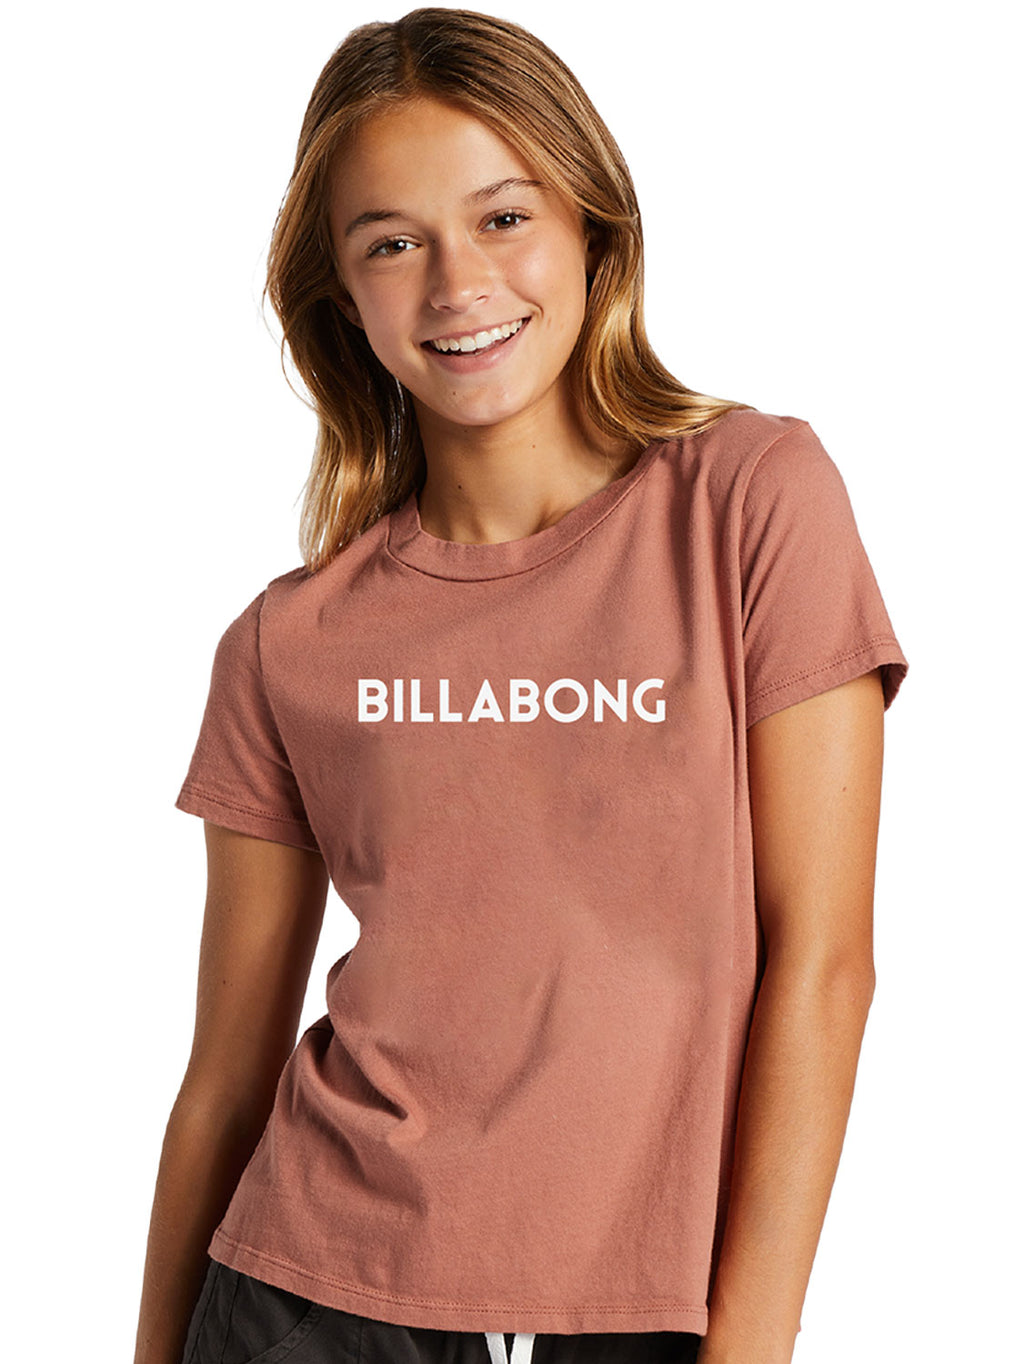 Billabong - Girls Dancer T Shirt